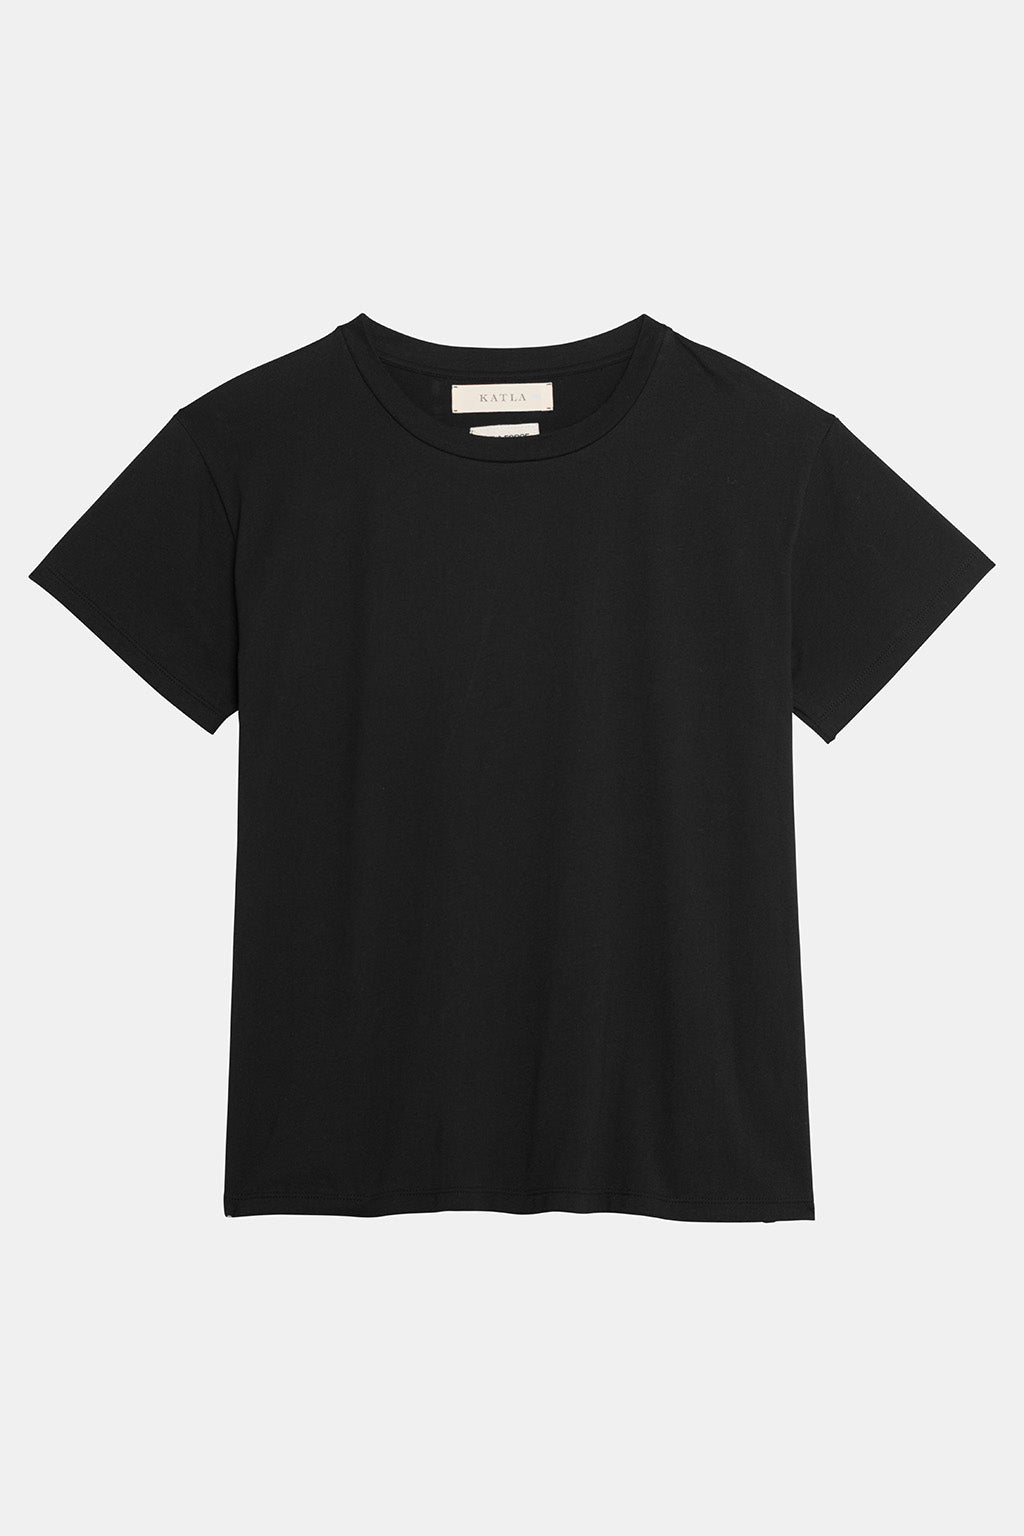 organic cotton black tshirt